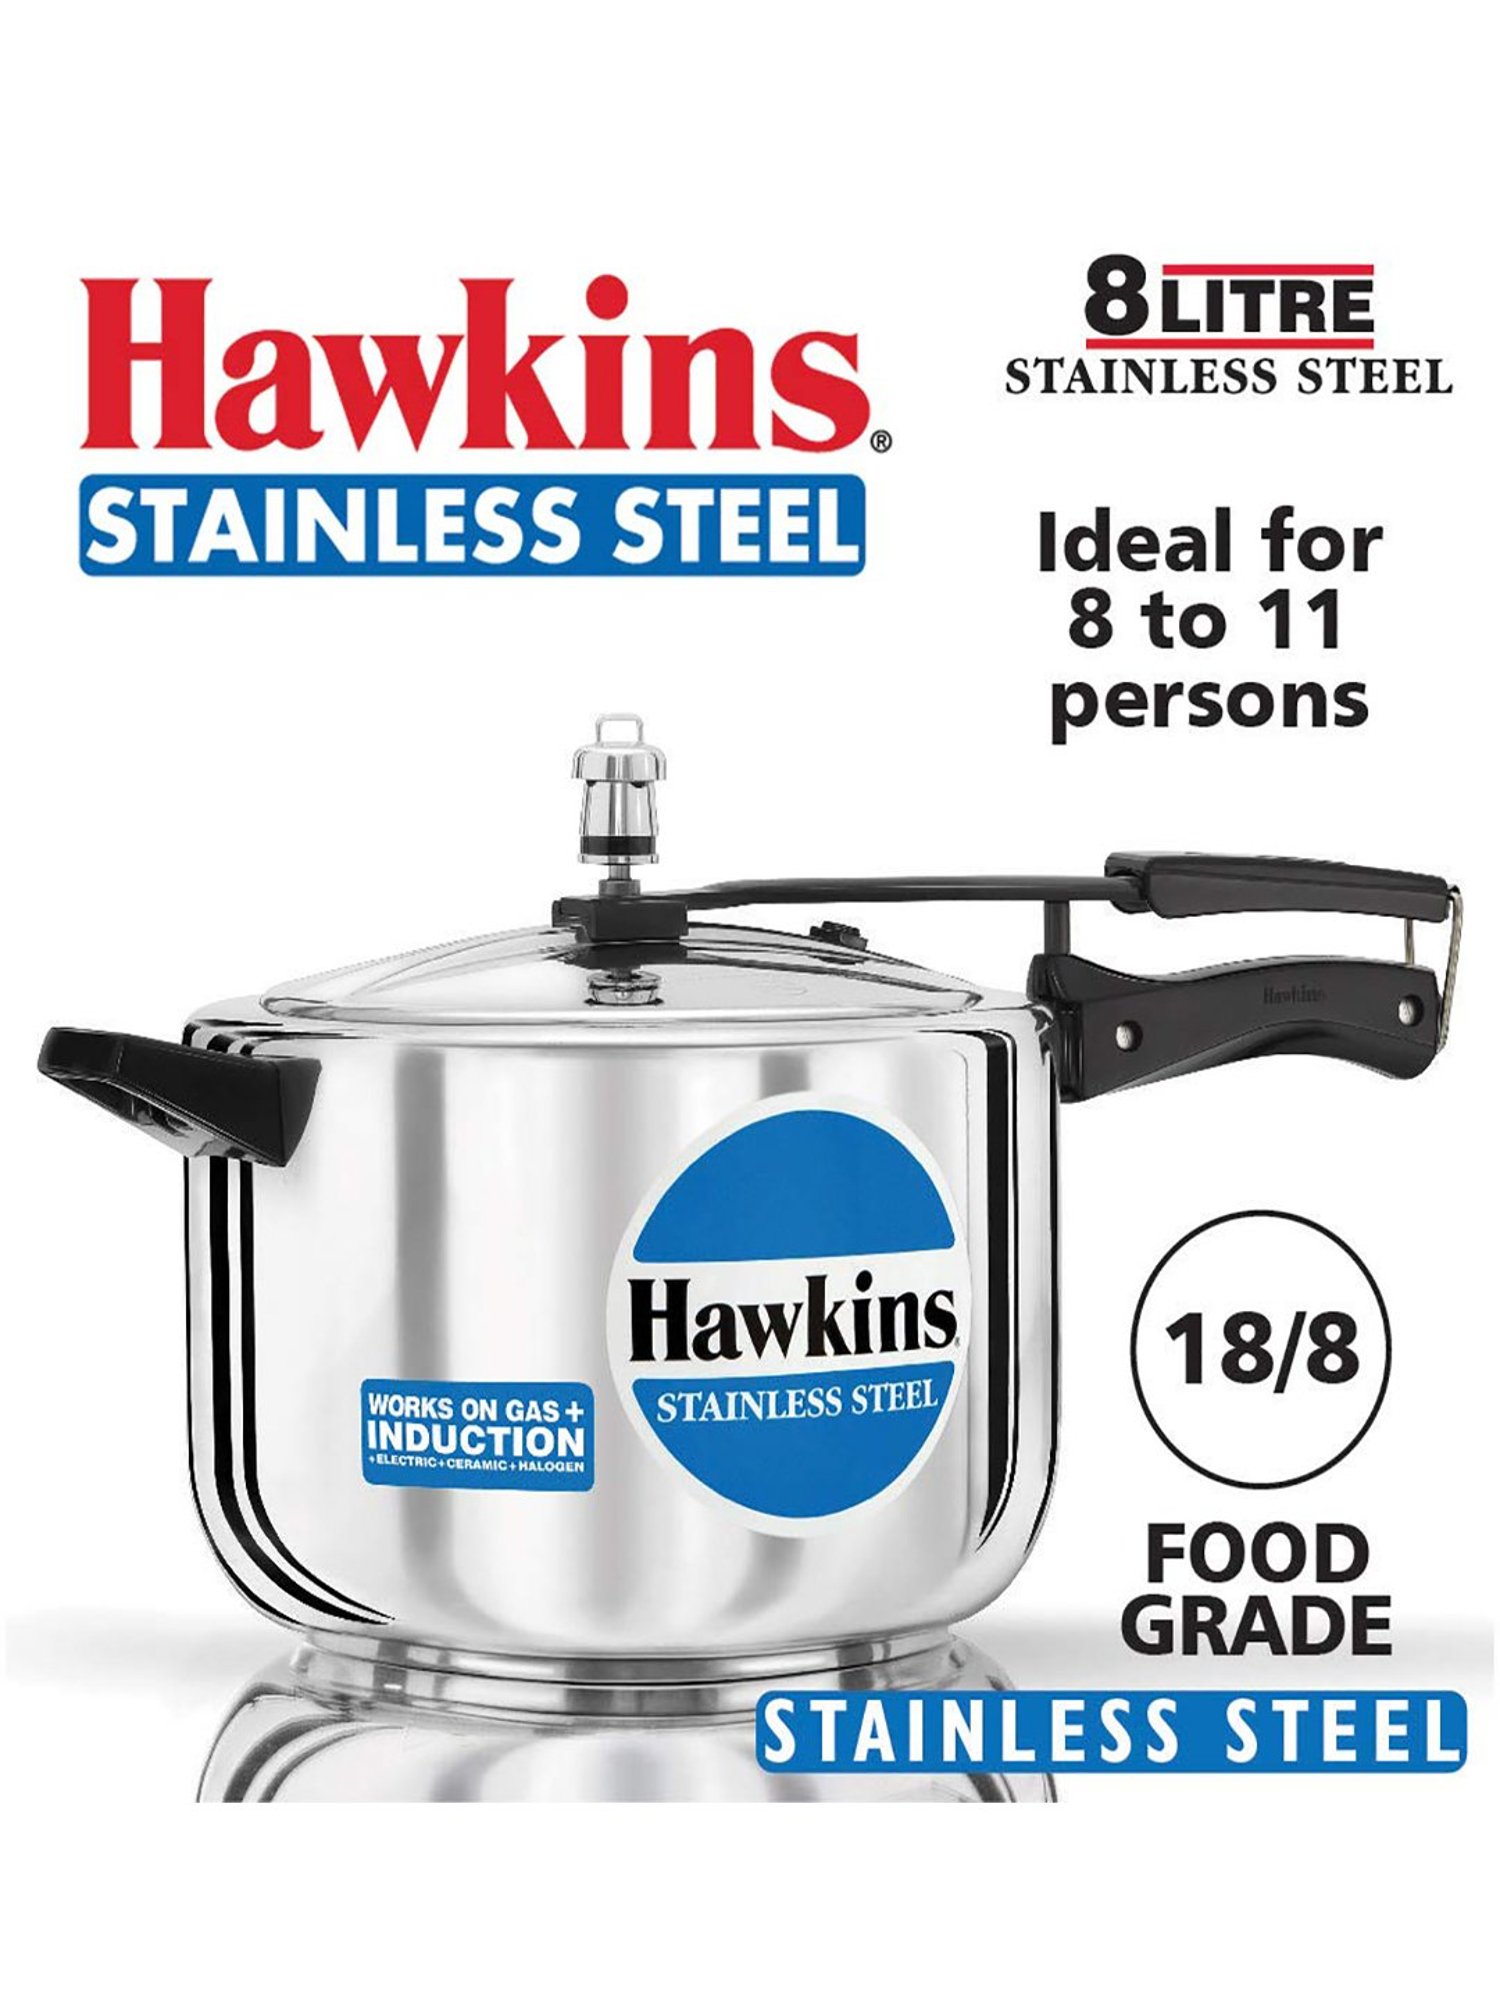 Hawkins B85 8.0 Liter Stainless Steel Pressure Cooker